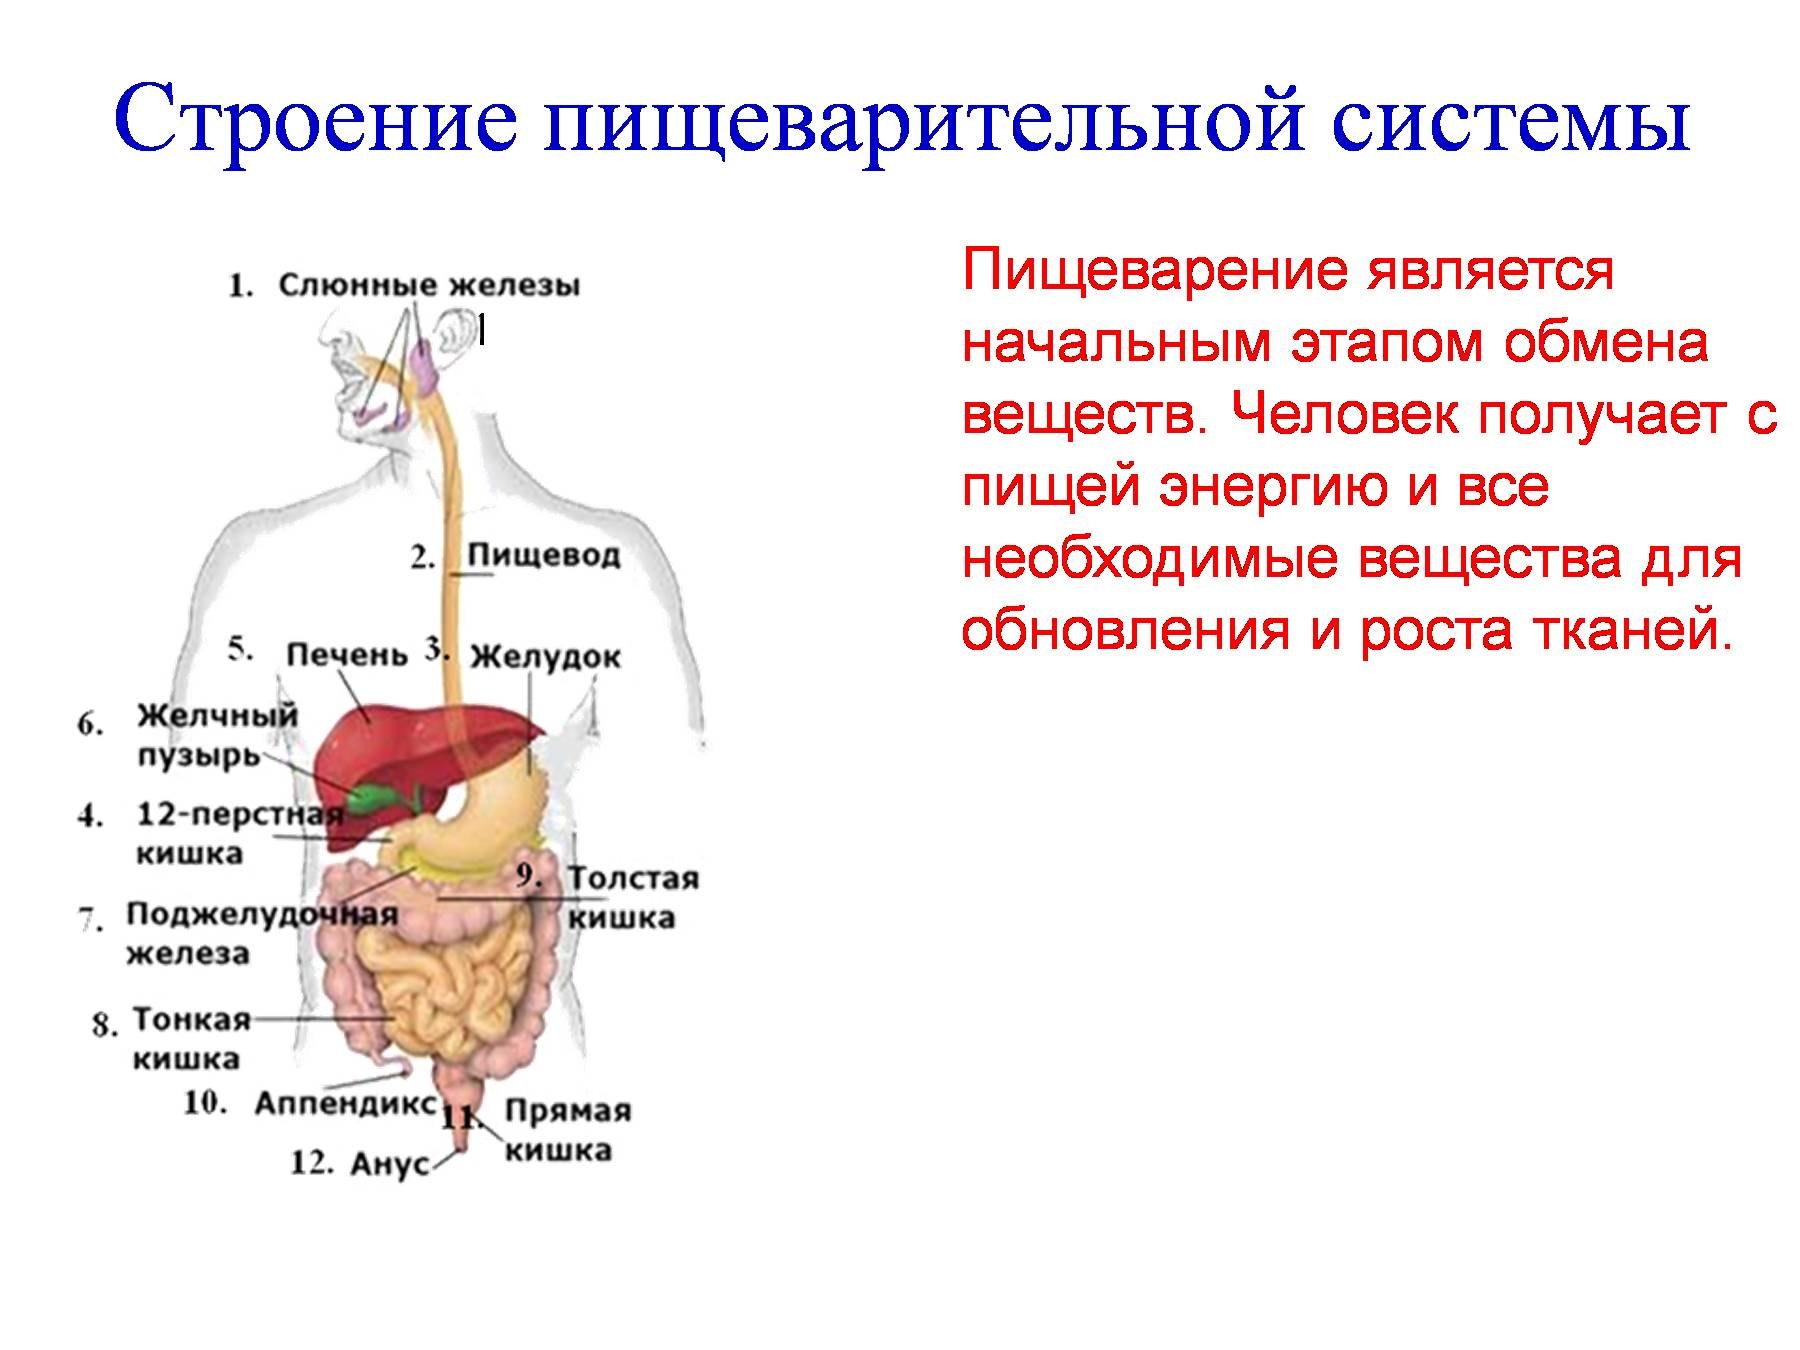 Желчный пузырь печень пищеварительные железы. Система пищеварения схема. Функции пищеварительной системы анатомия. Строение органов пищеварительной системы человека. Общий план строения пищеварительной системы человека анатомия.